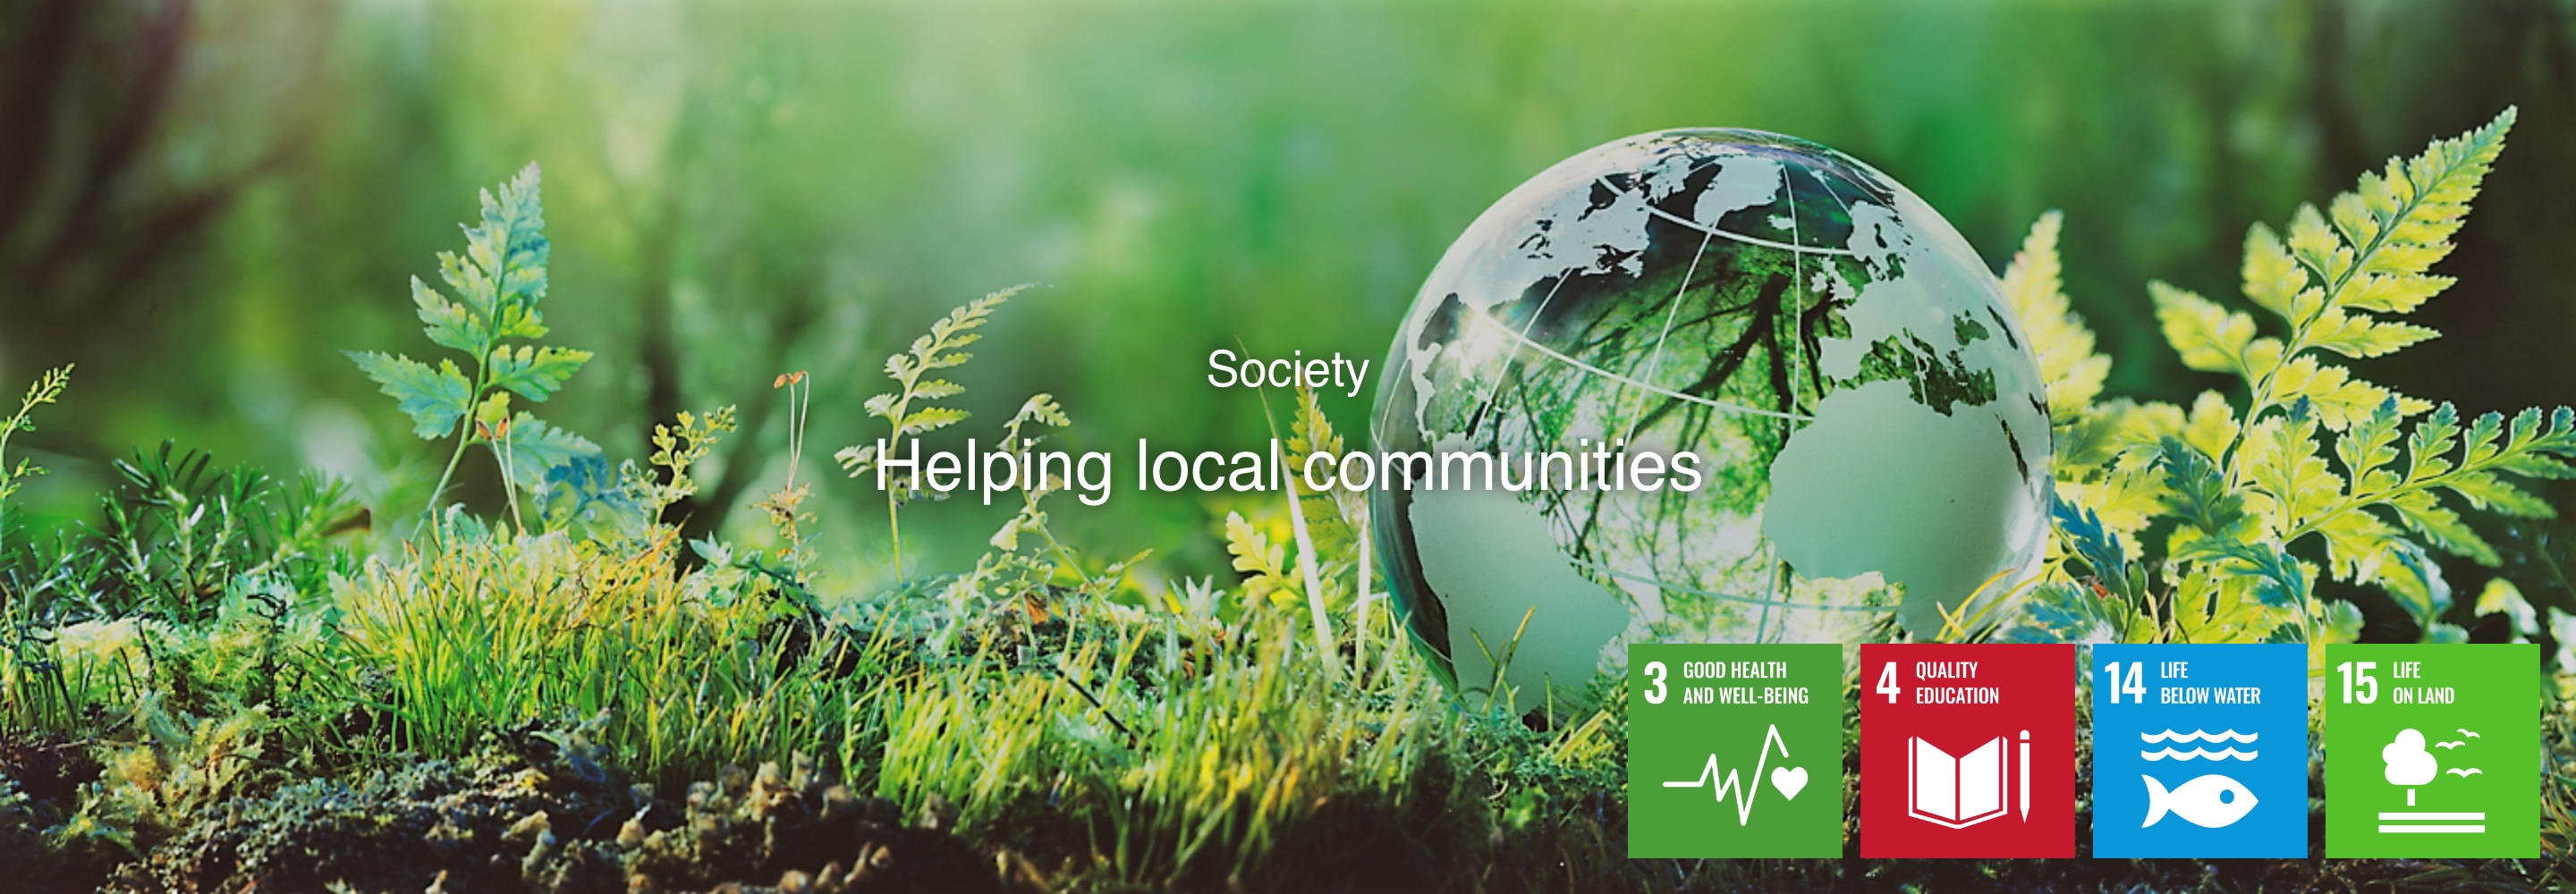 Sociedad Ayudando a las comunidades locales